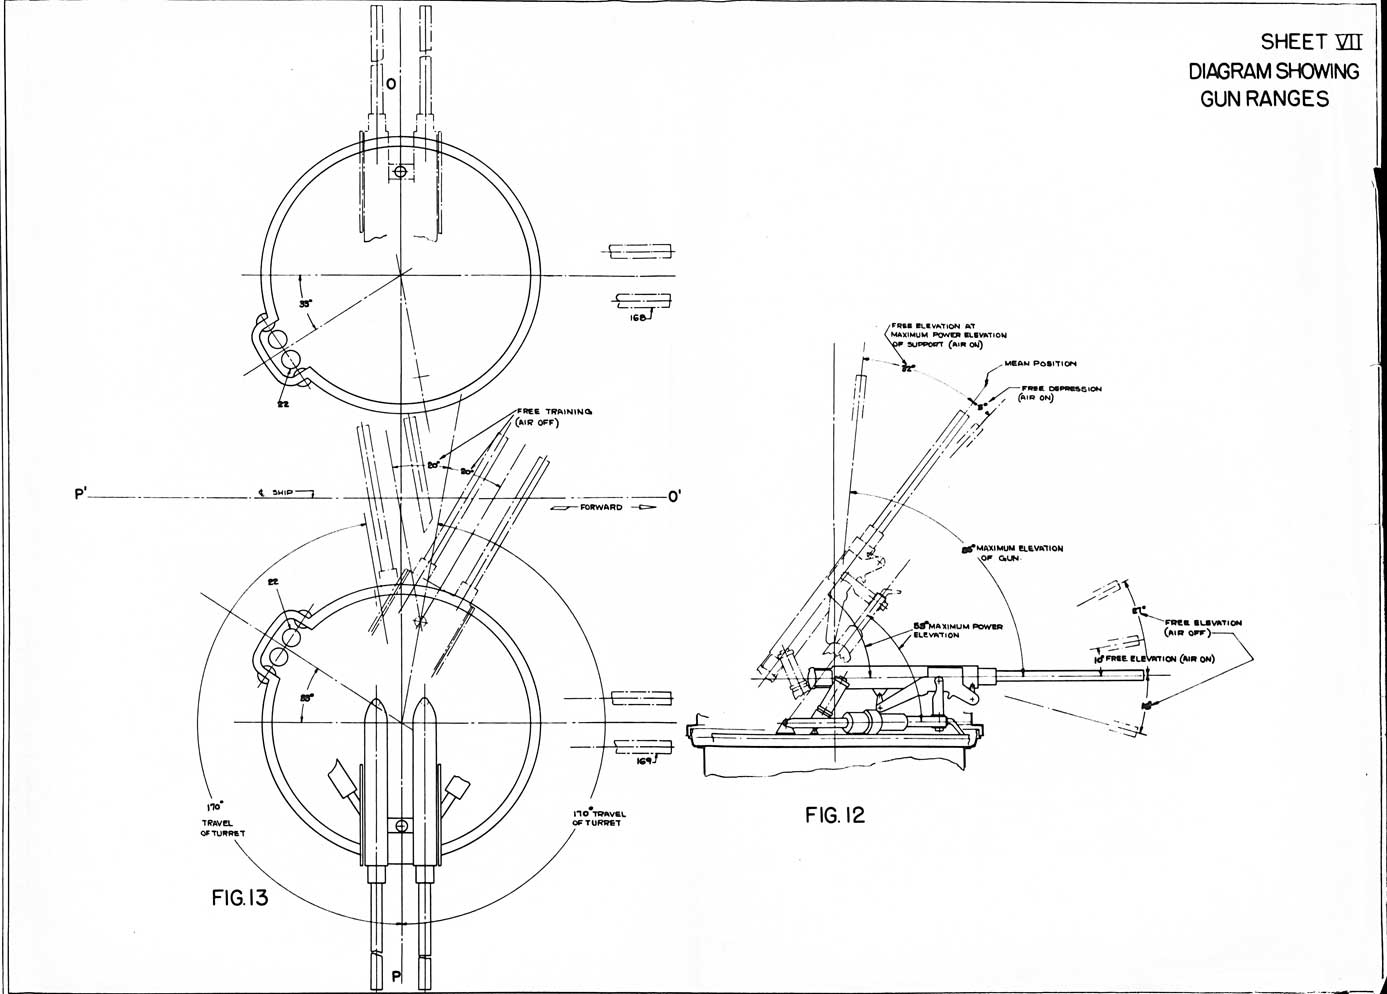 Sheet VII, Diagram Showing Gun Ranges